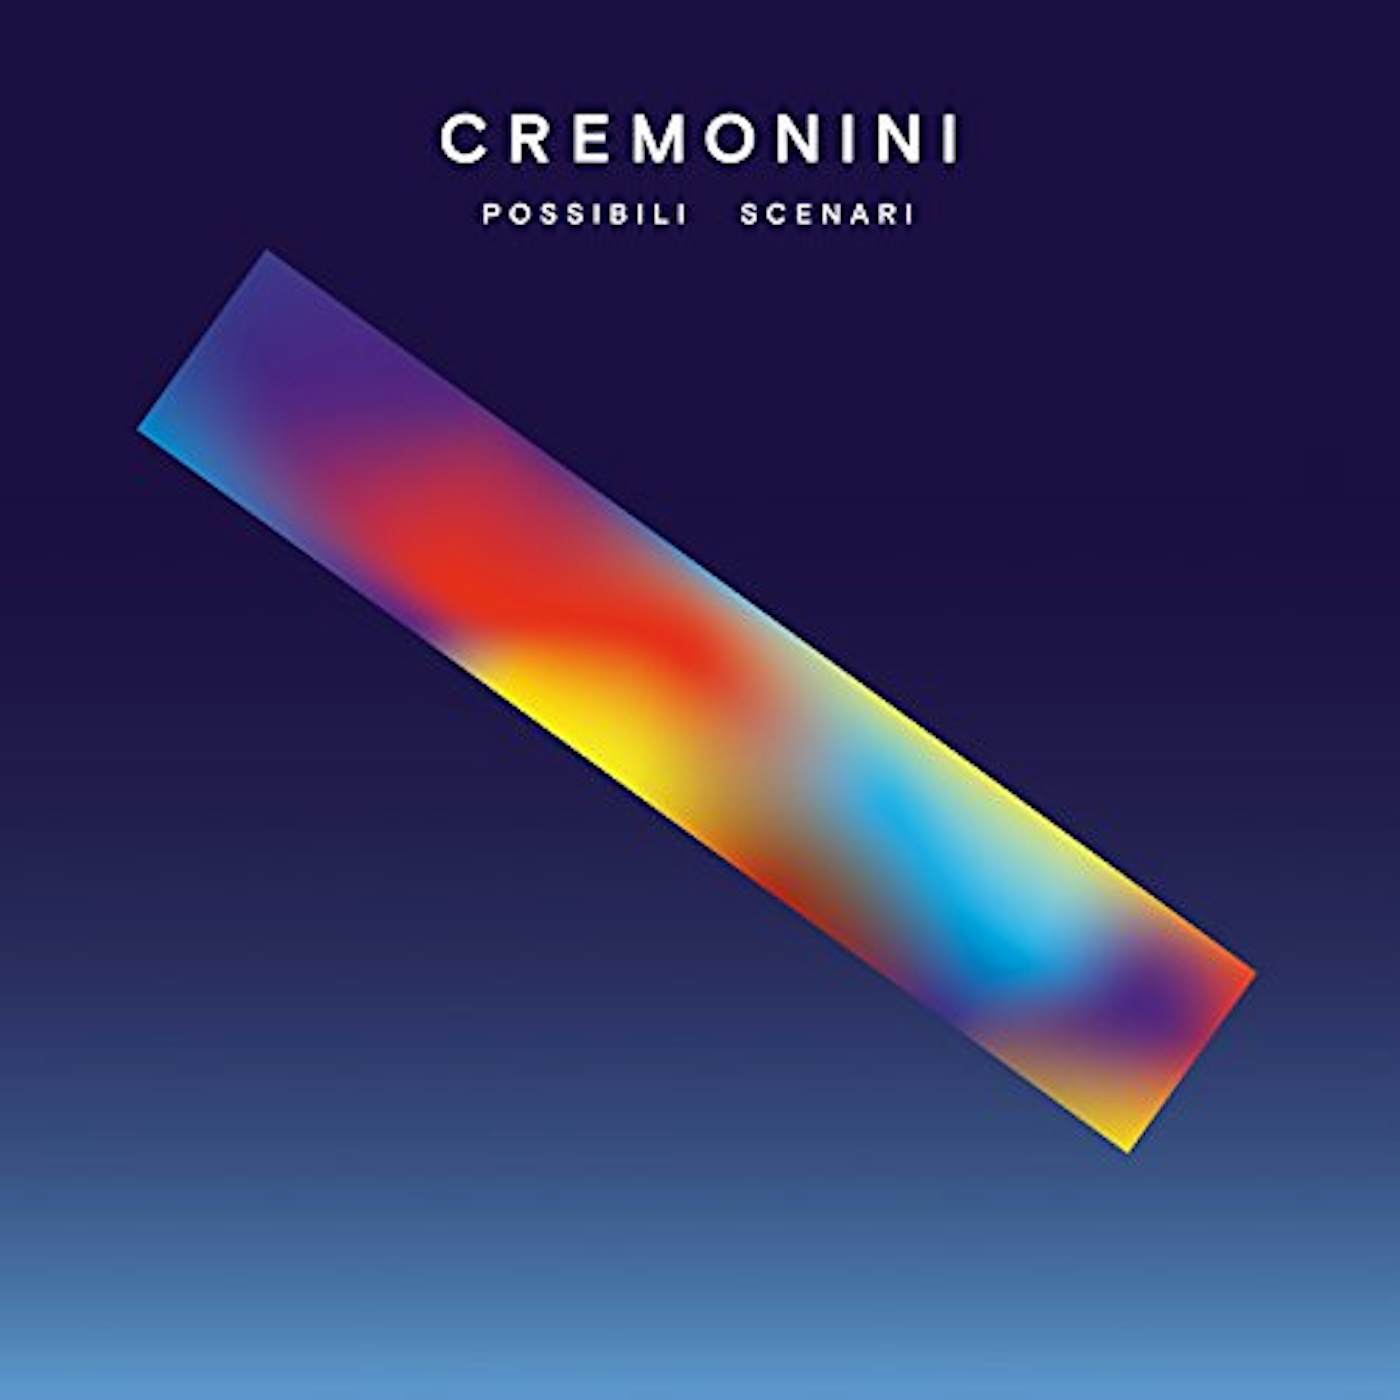 Cesare Cremonini Possibili Scenari Vinyl Record